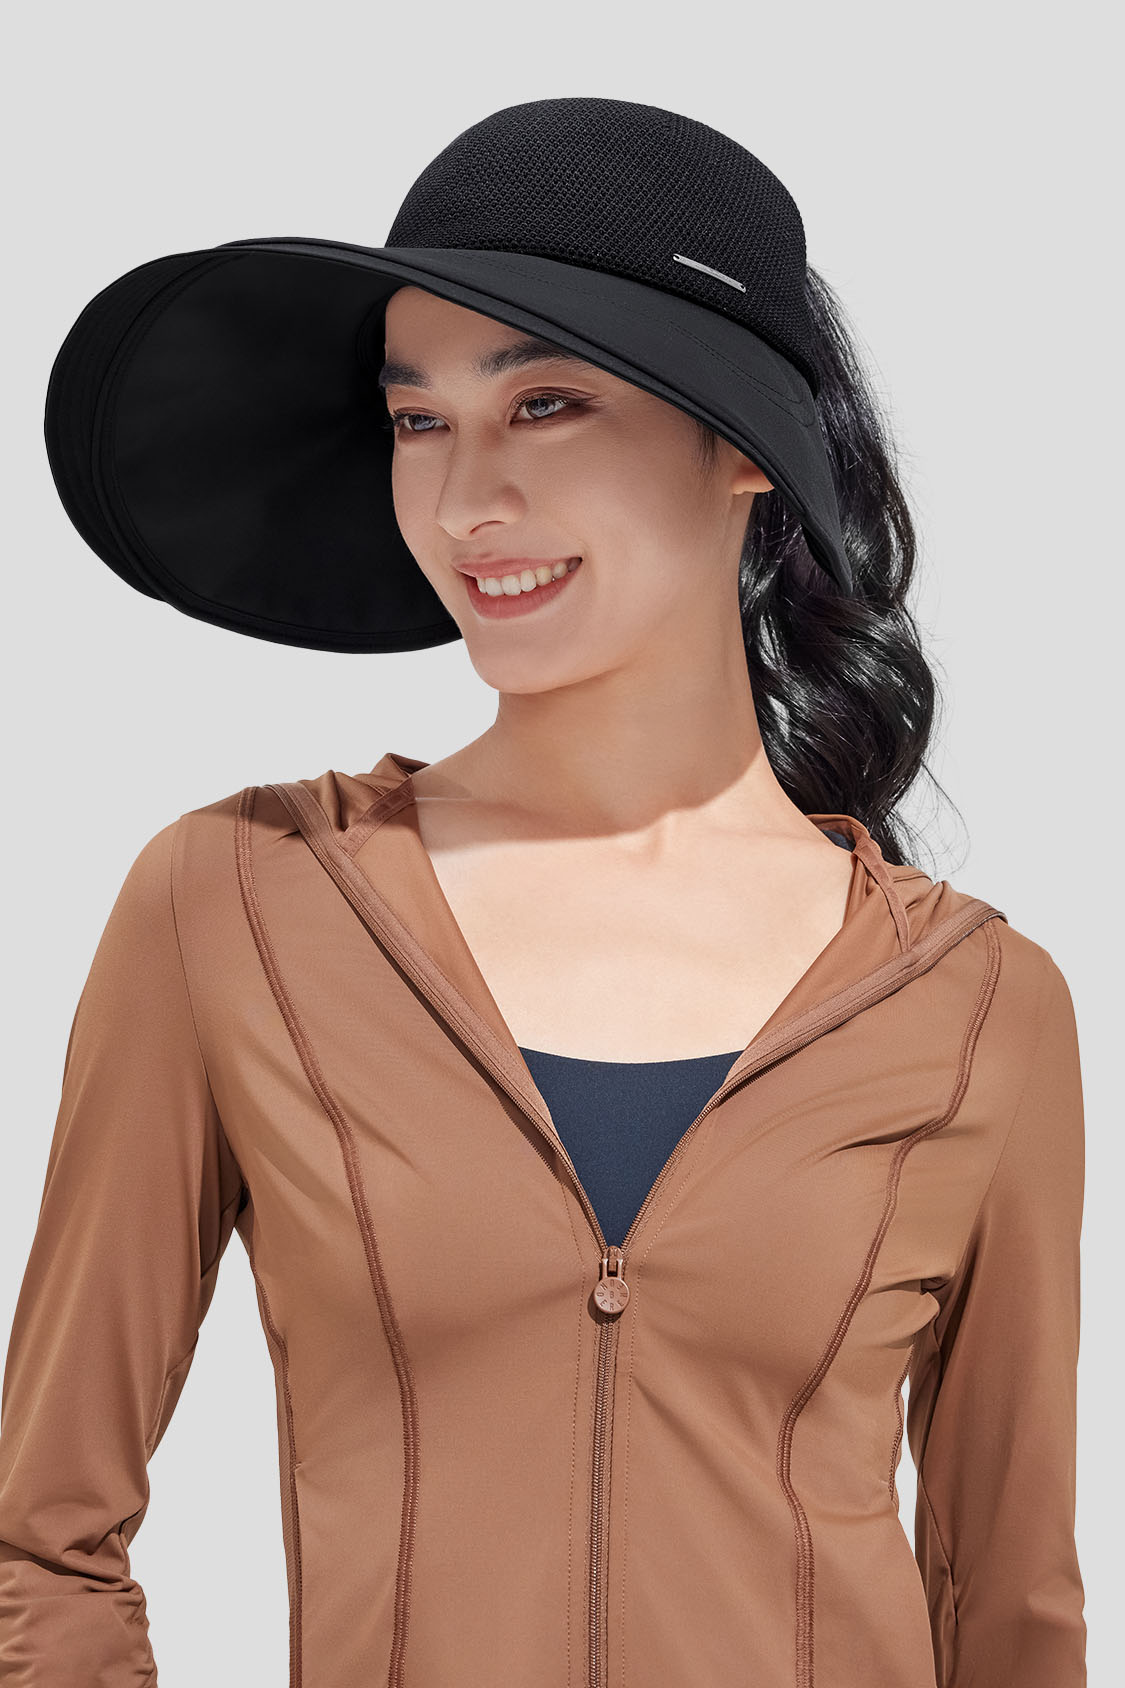 beneunder women's bucket hats ipf50+ #color_black